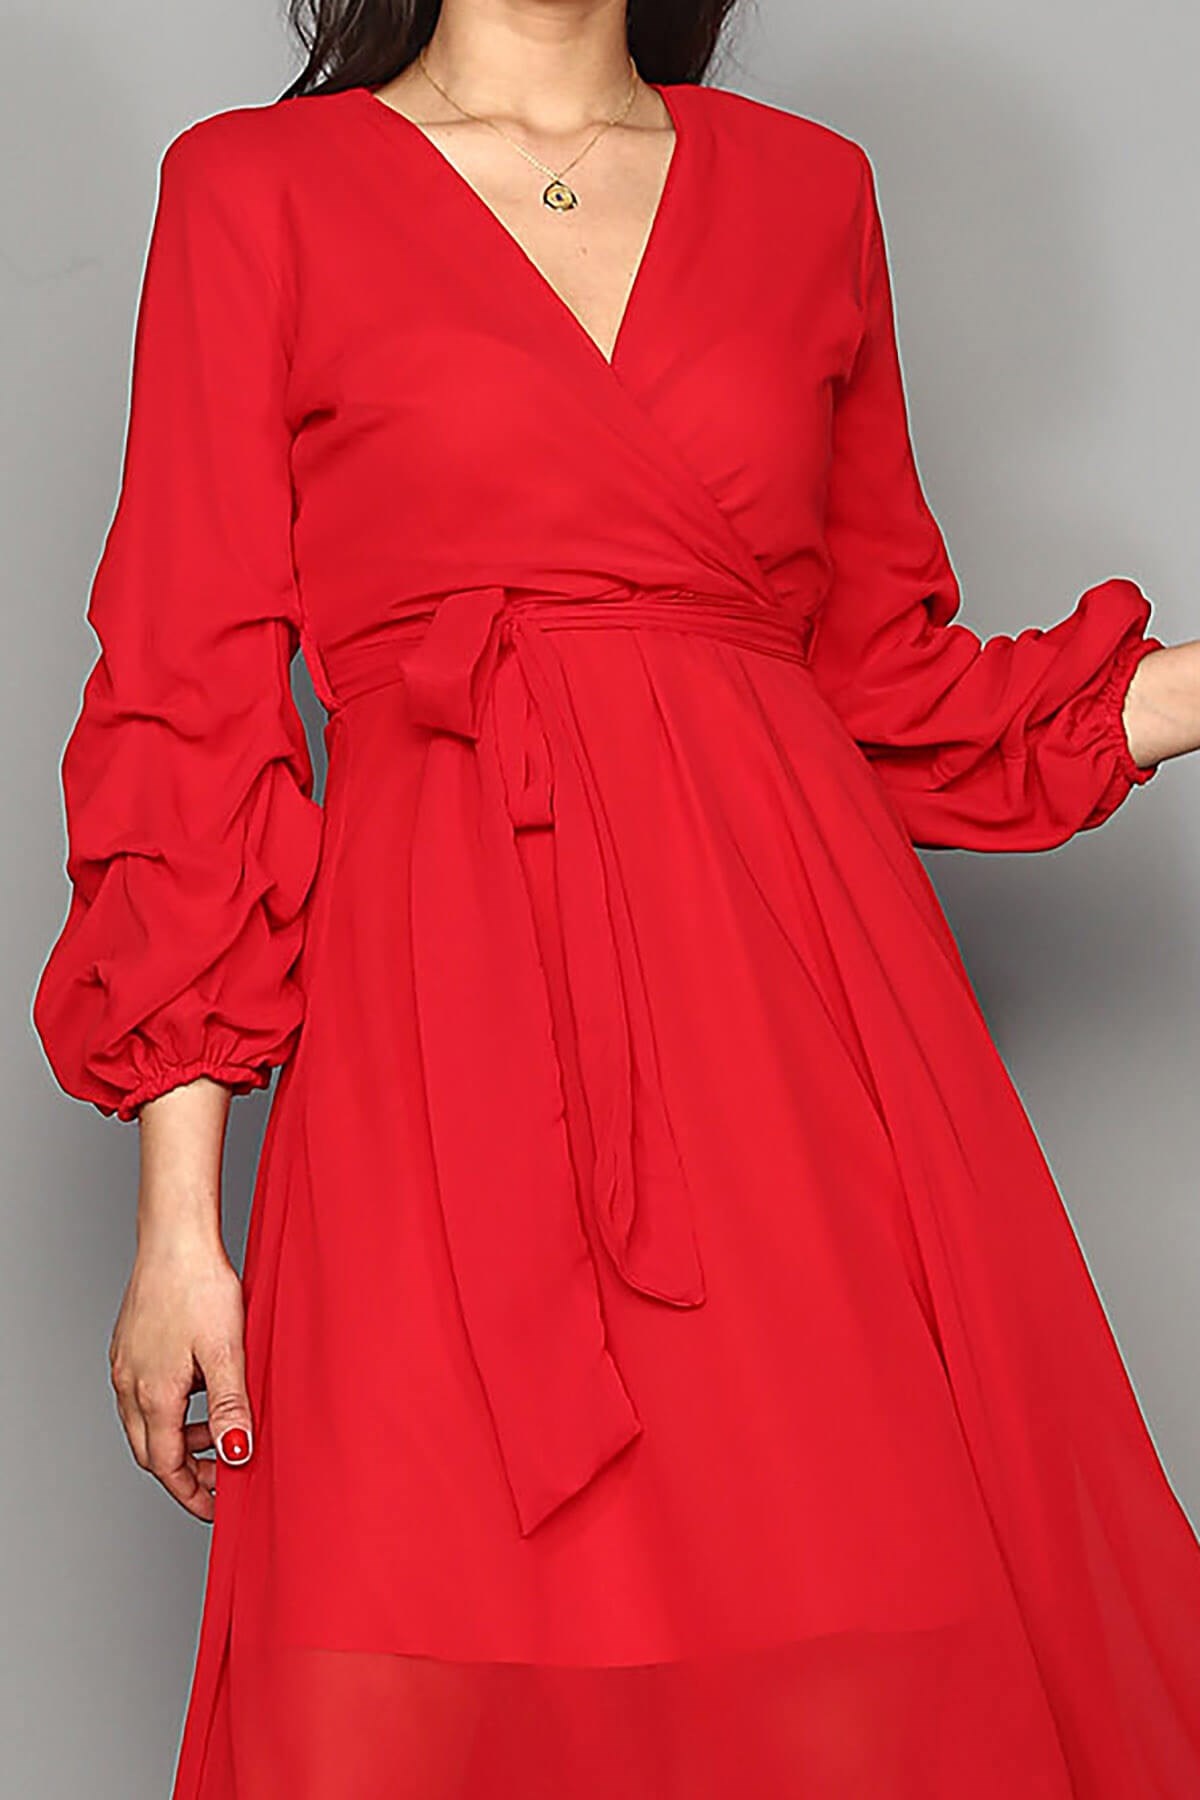 Kırmızı Şifon Elbise - Moda Kapımda İle Kapınızda!